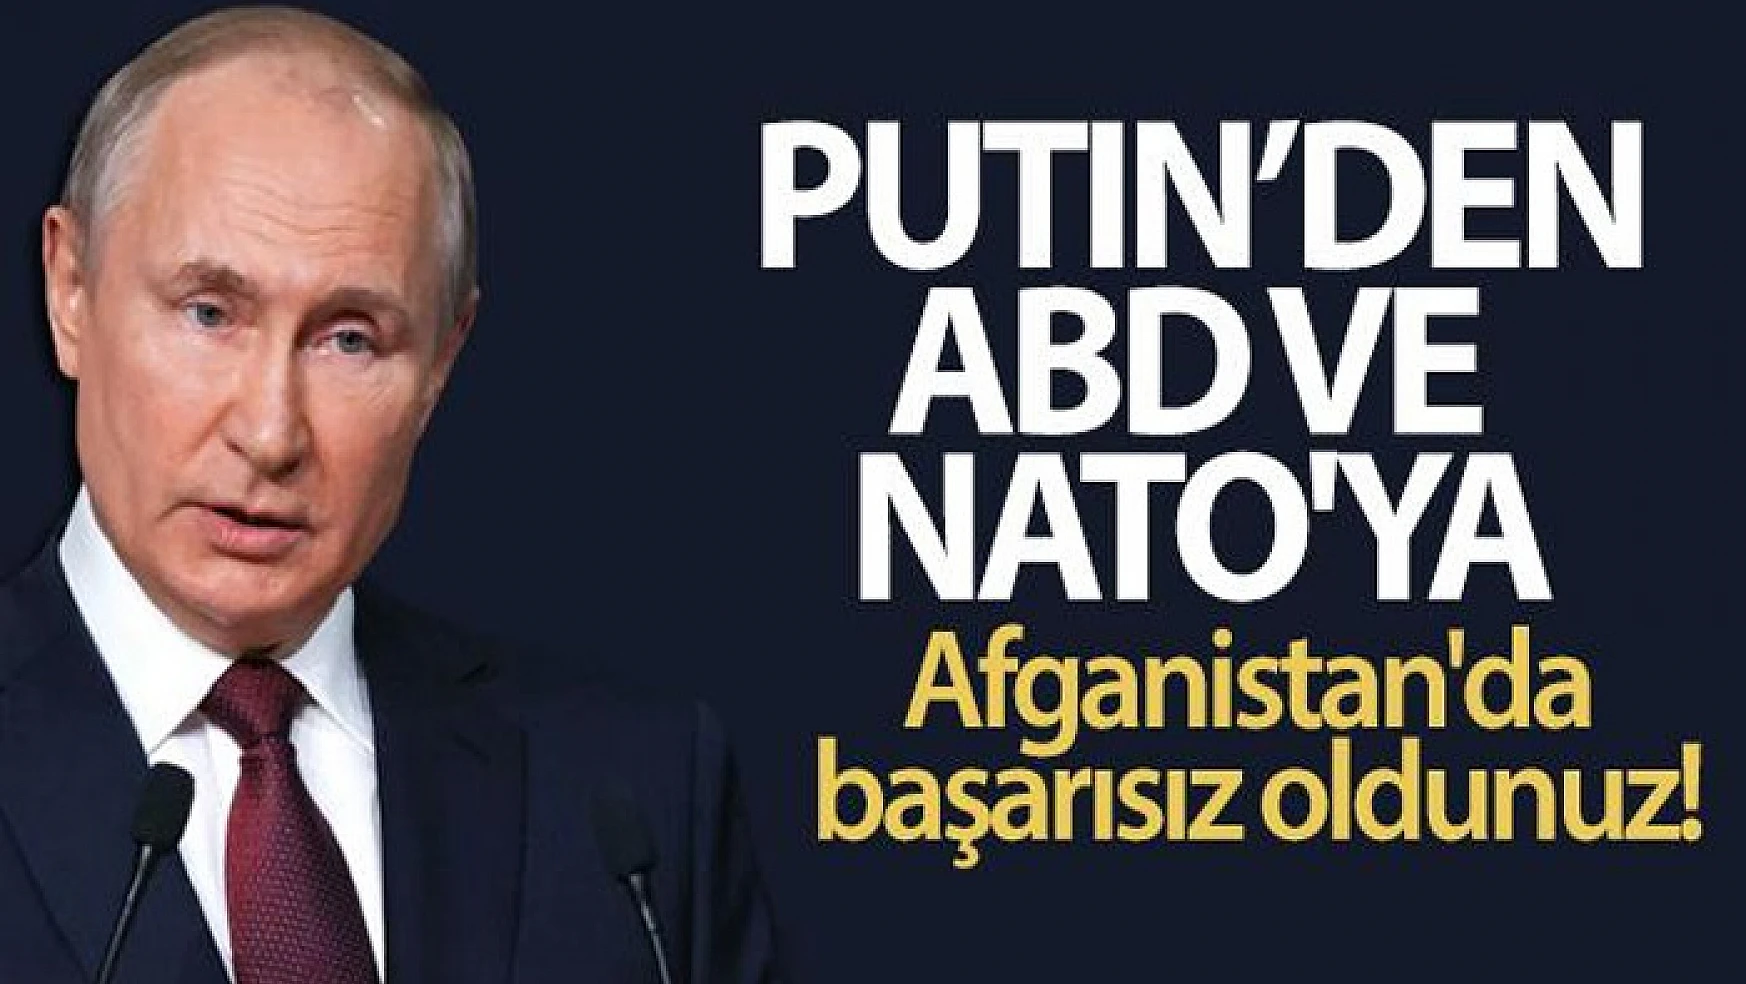 Putin, ABD ve NATO'ya yüklendi: Afganistan'da başarısız oldunuz!